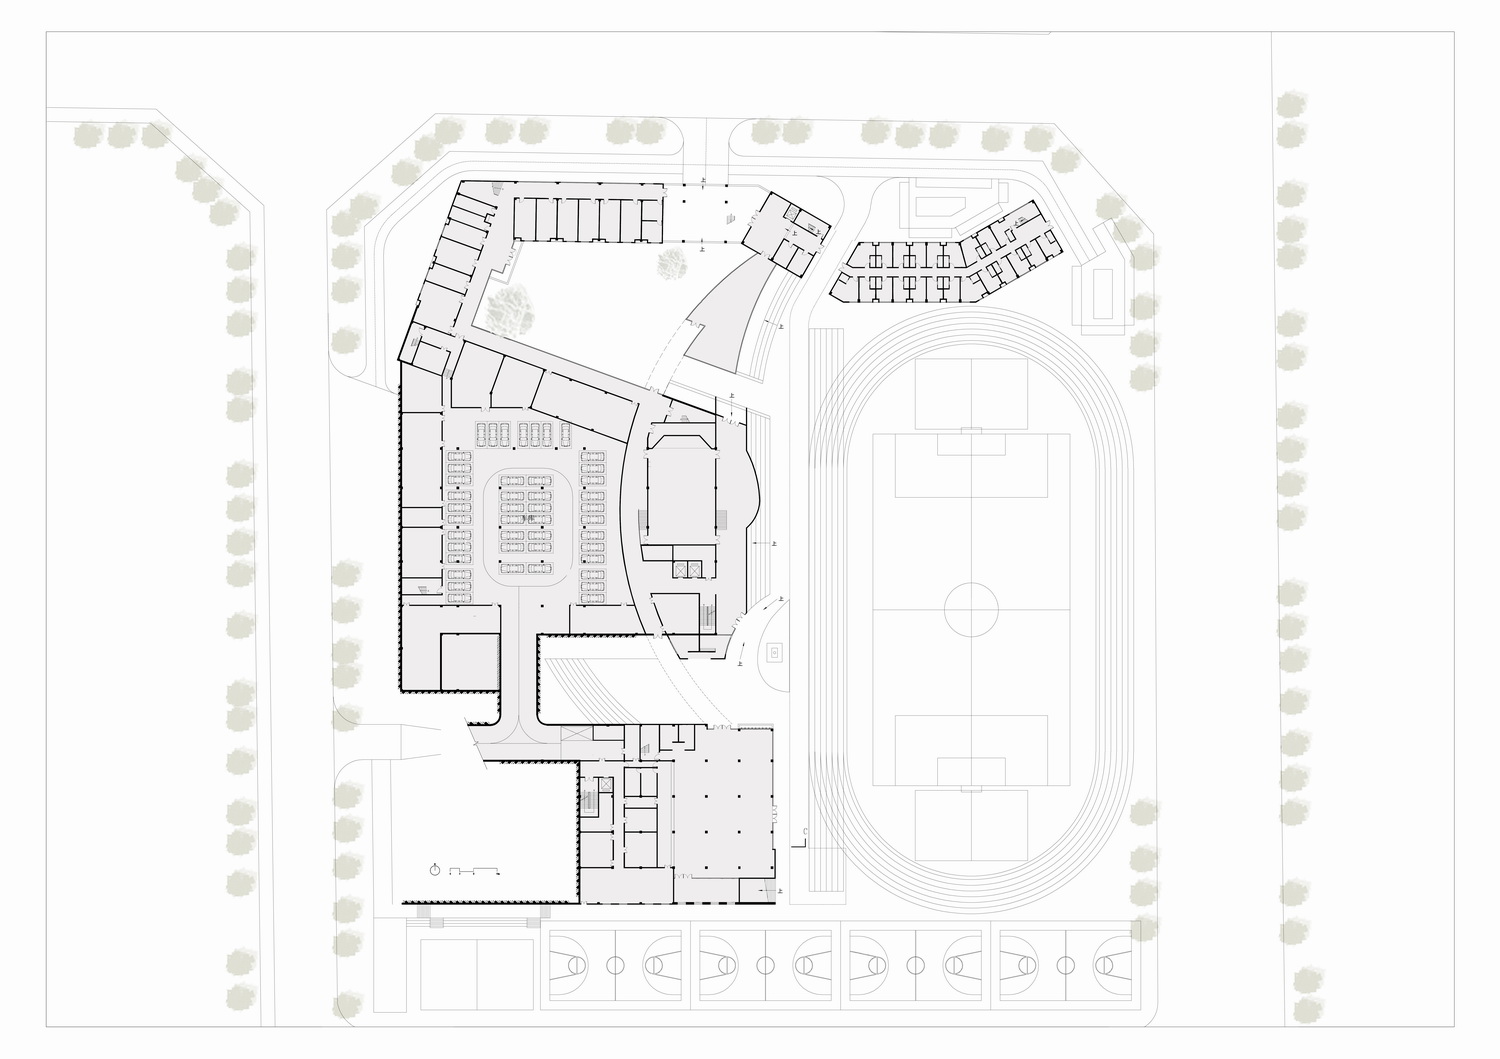 调整大小 地下一层平面图-Ground floor plan-UA尤安设计.jpg